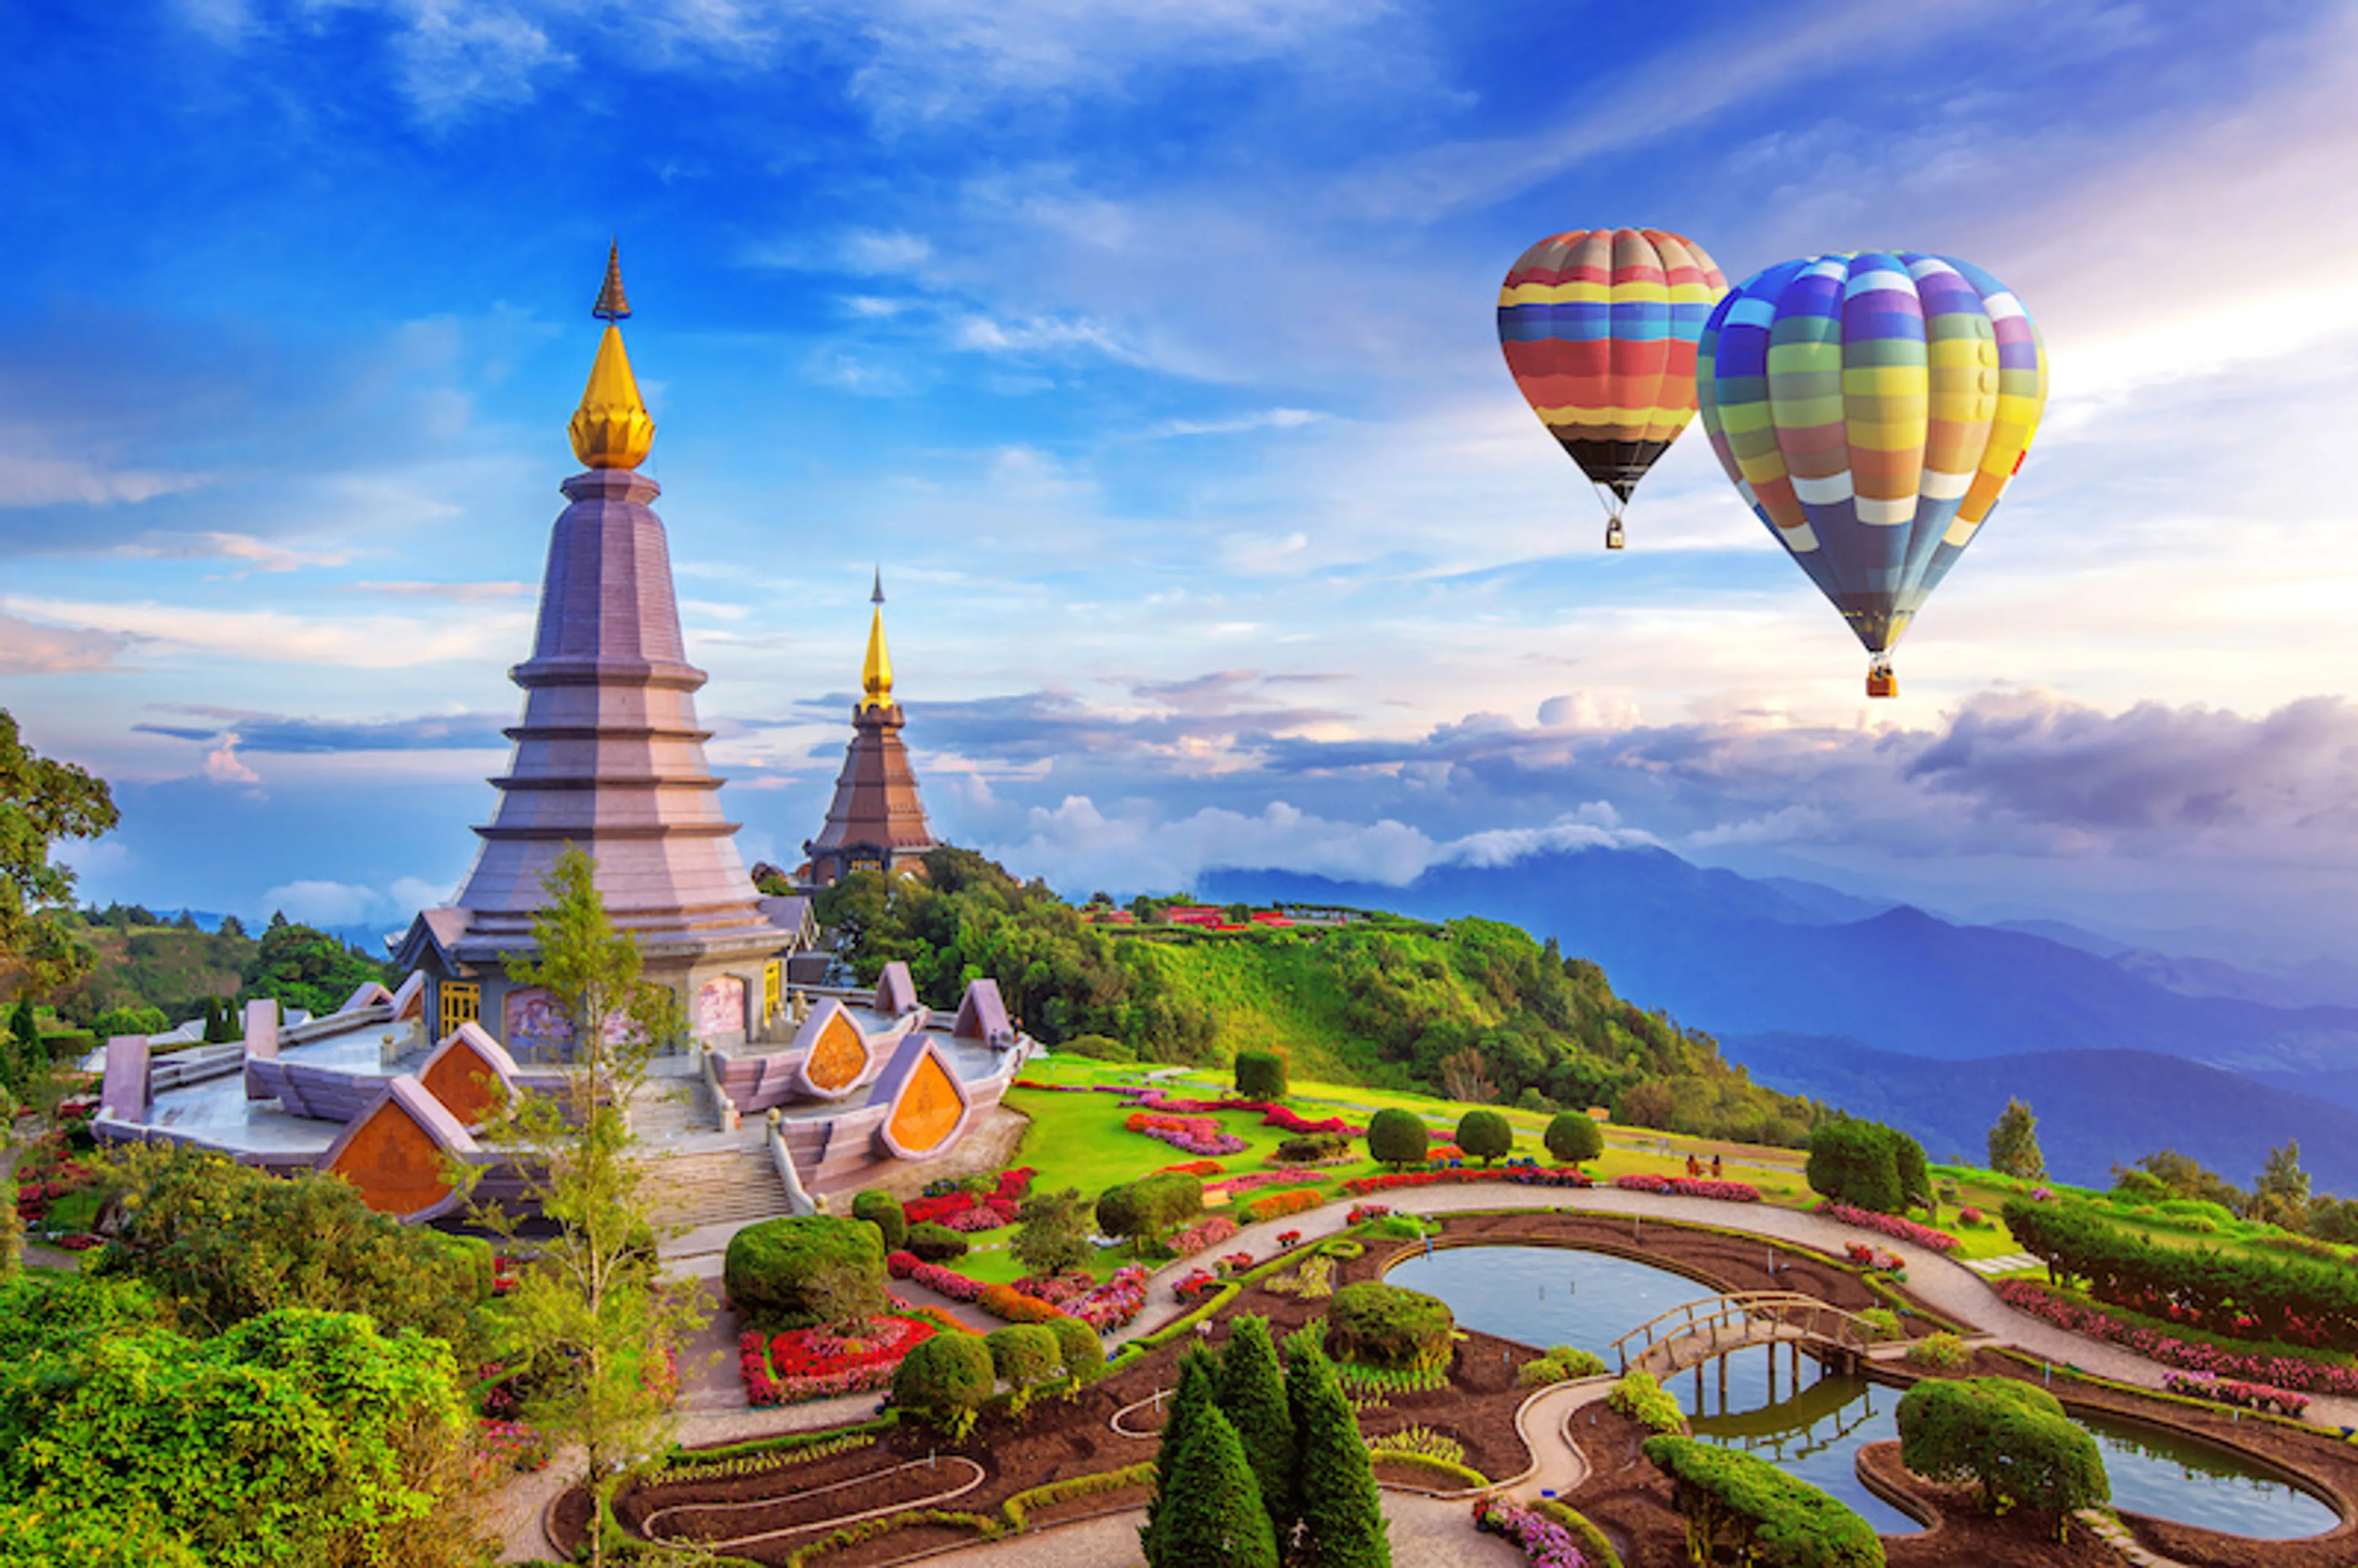 Khám phá ngôi chùa Wat Tham Suea nổi tiếng và hấp dẫn tại Thái Lan